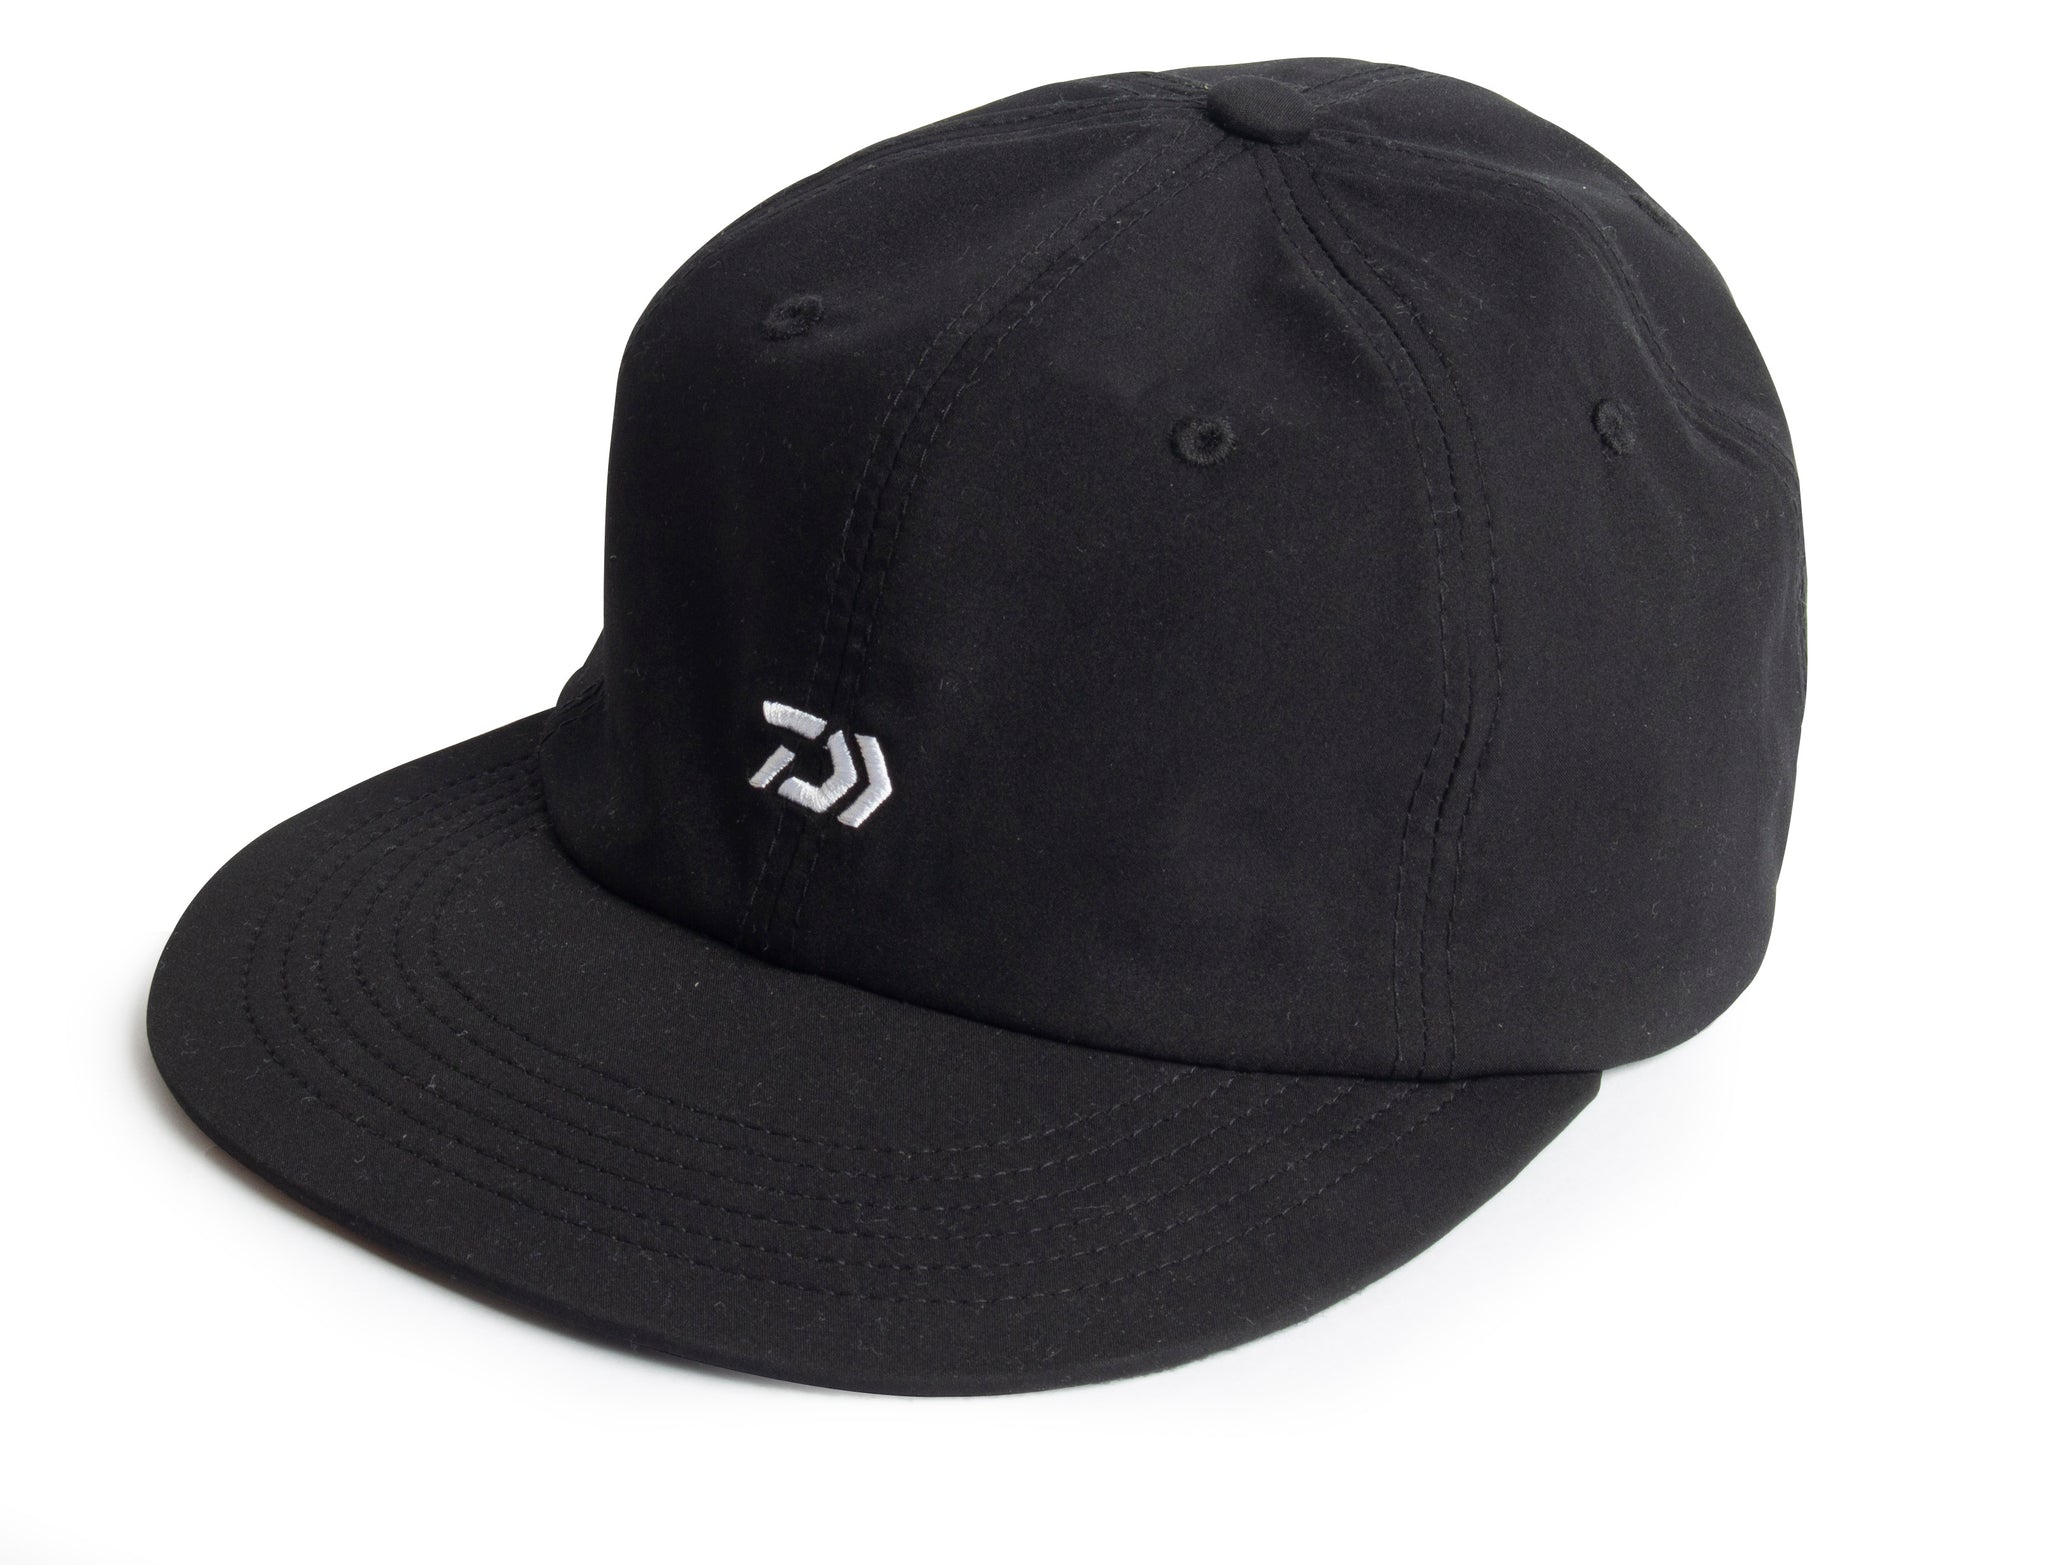 D-VEC 6 PANEL CAP – Daiwa NZ